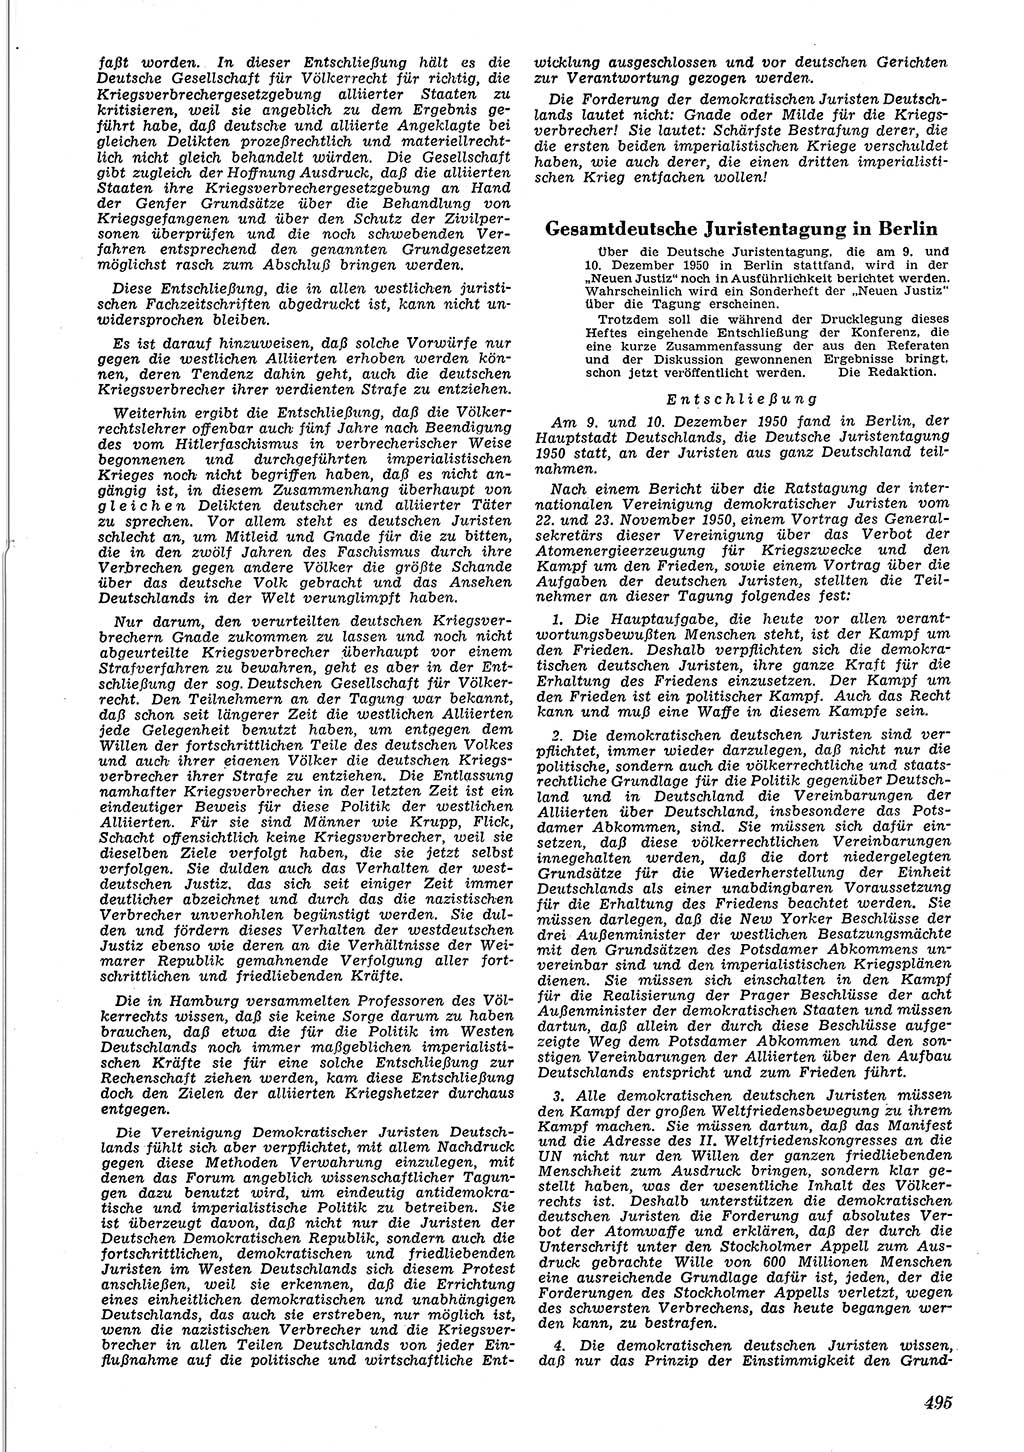 Neue Justiz (NJ), Zeitschrift für Recht und Rechtswissenschaft [Deutsche Demokratische Republik (DDR)], 4. Jahrgang 1950, Seite 495 (NJ DDR 1950, S. 495)